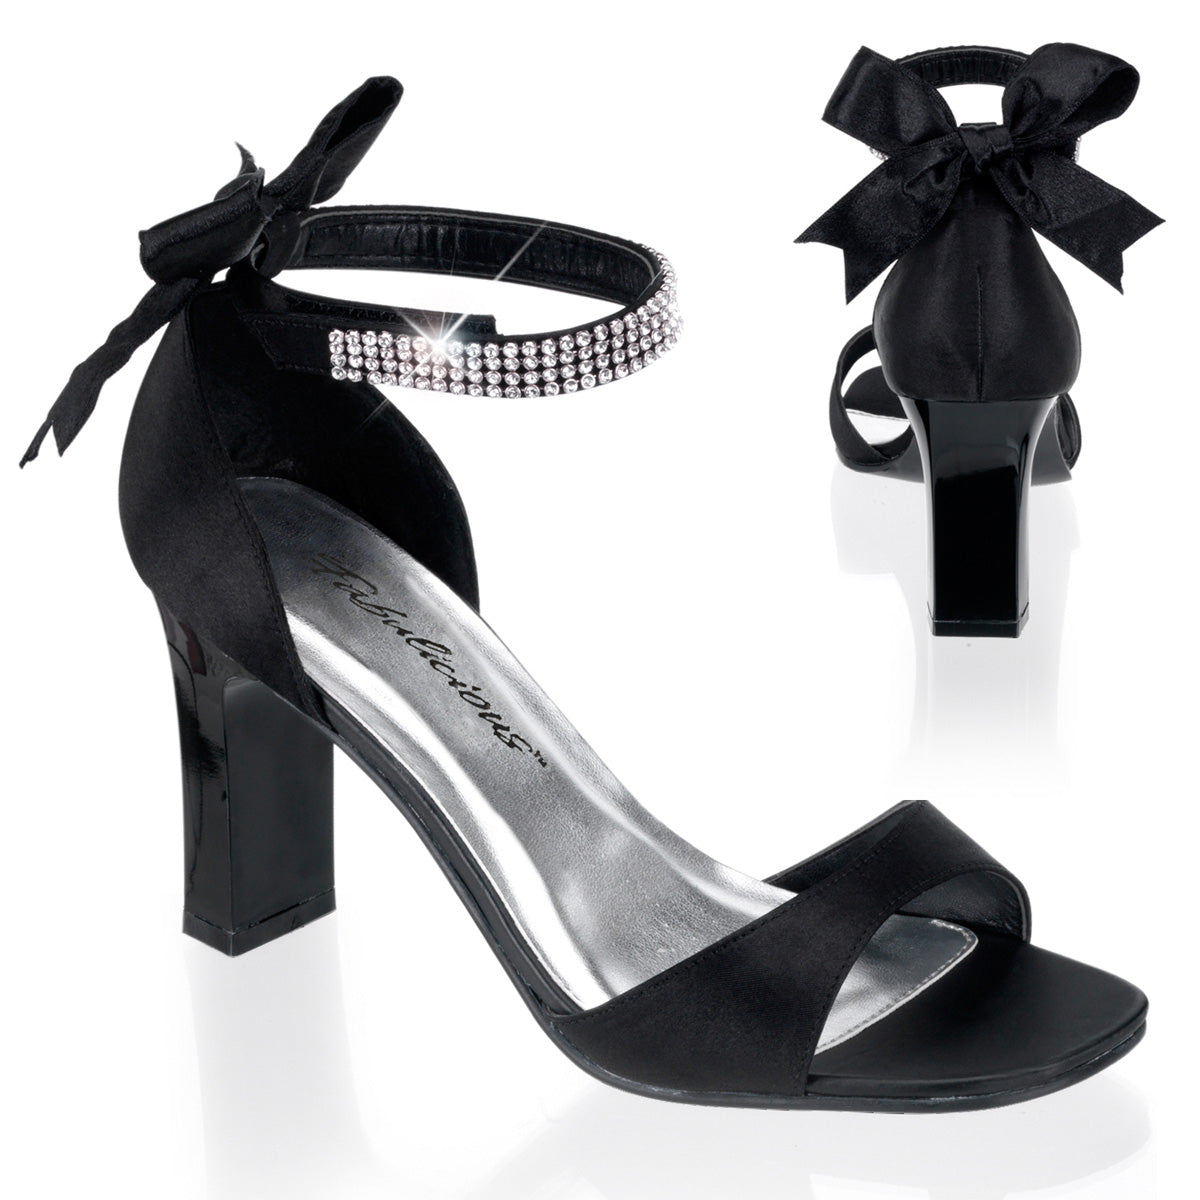 ROMANCE-372 Large Size Ladies Shoes 3" Heel Black Satin Fetish Footwear